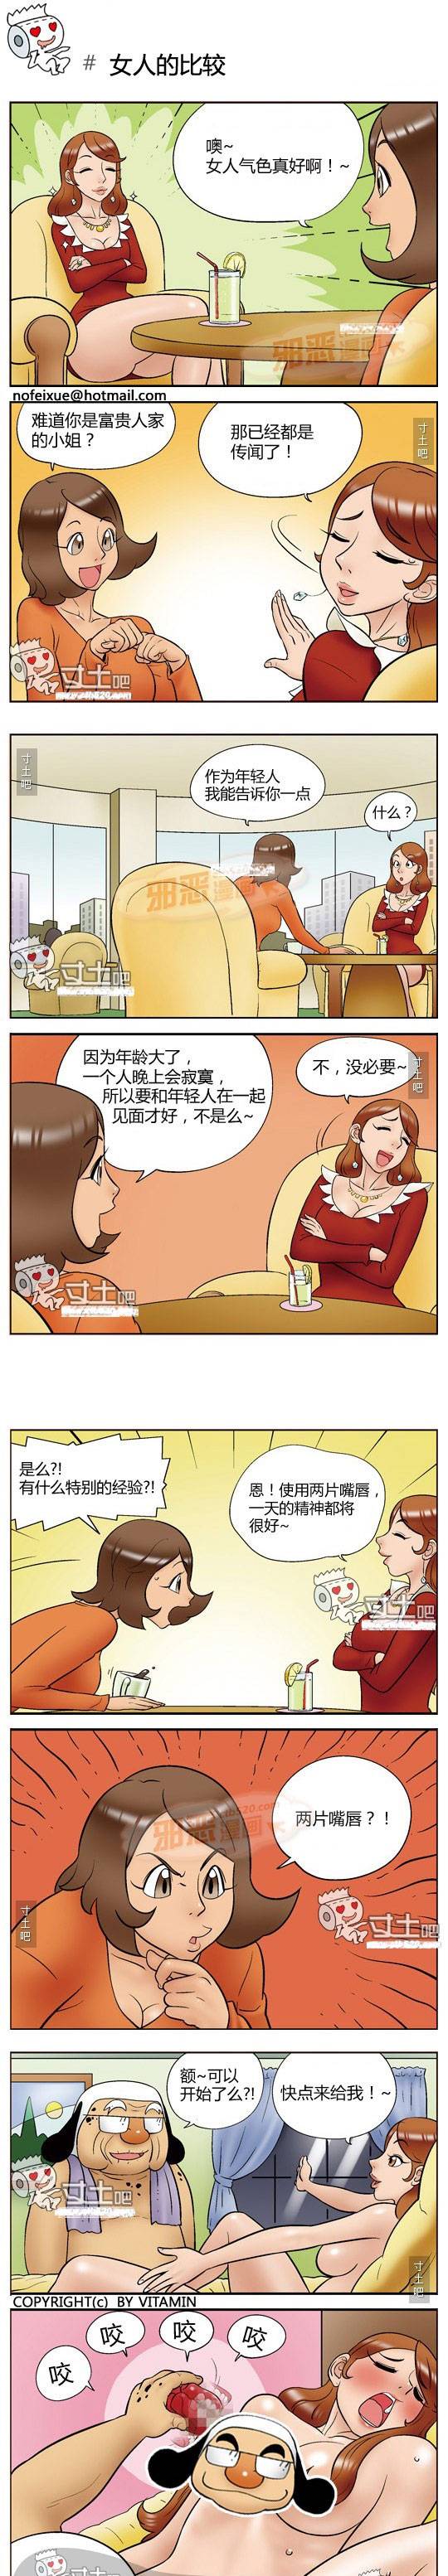 邪恶漫画日本漫画 女人的比较